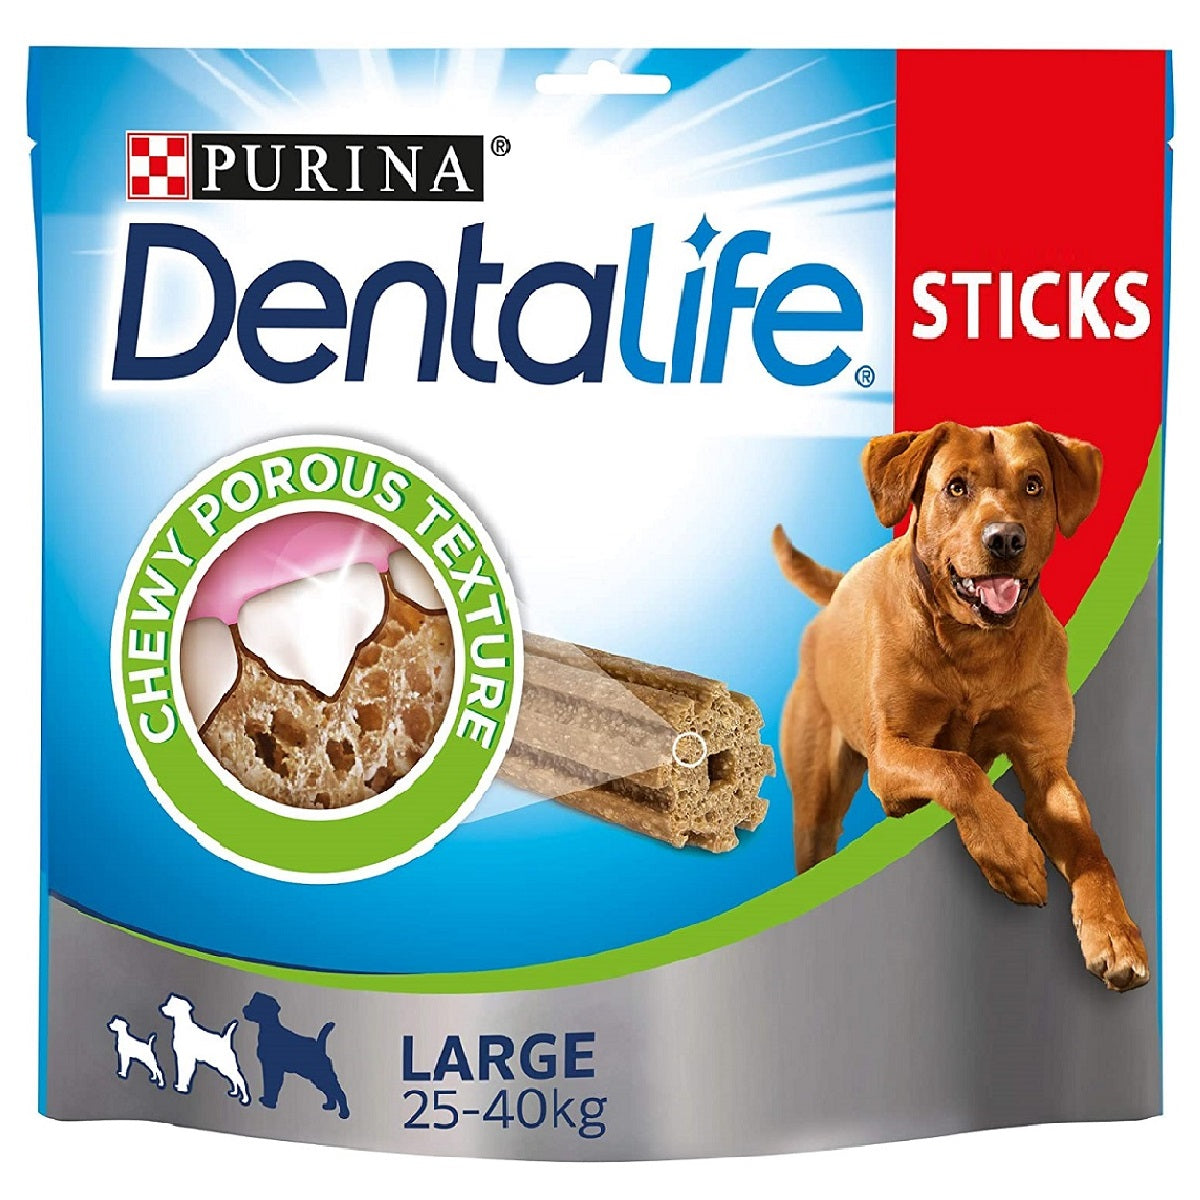 Purina - DentaLife Large Dog